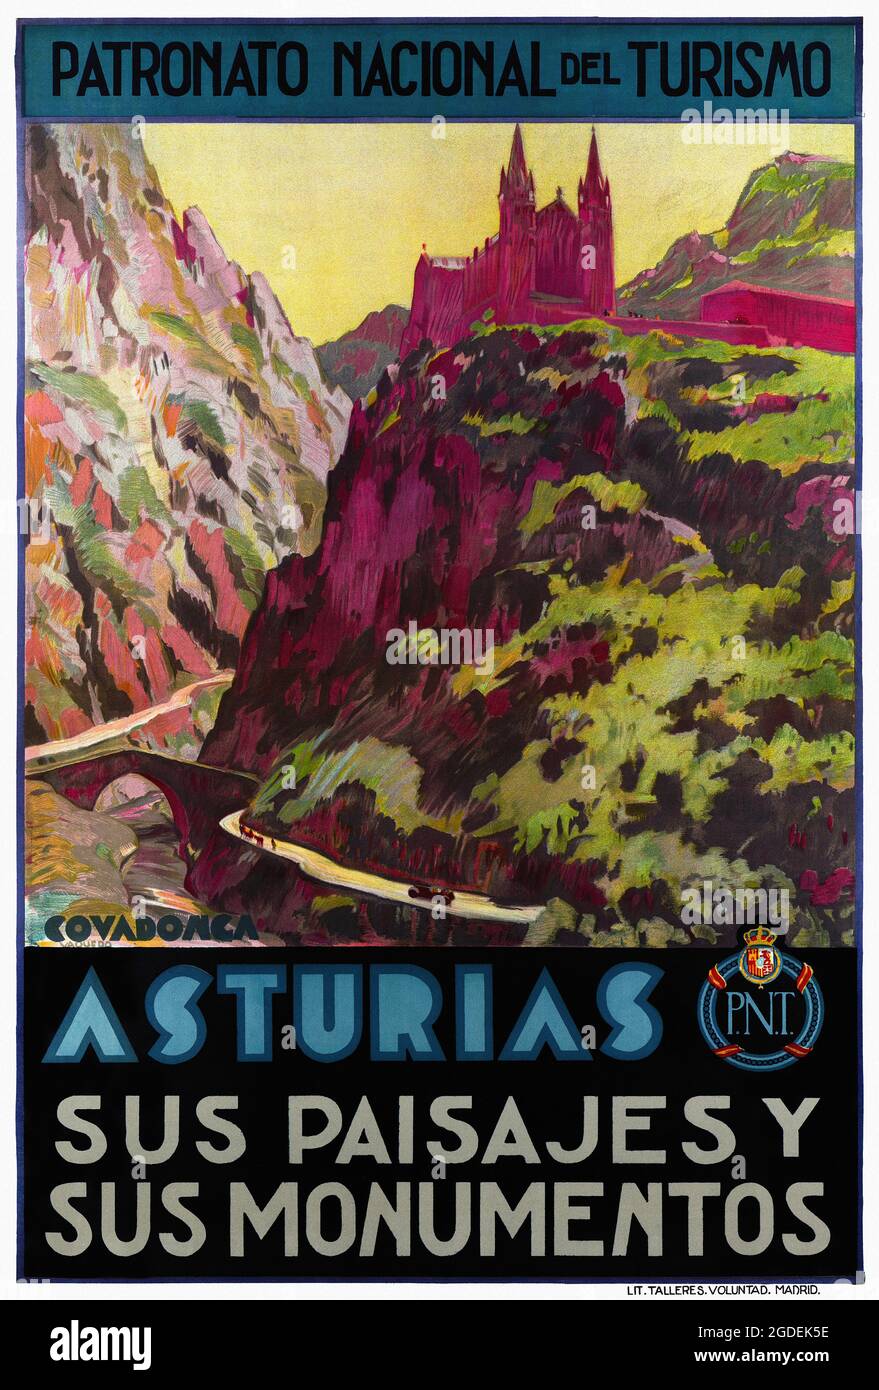 Asturias sus paisajes y sus monumentos by Joaquín Vaquero Palacios  (1900-1998). Restored vintage poster published in 1940 in Spain Stock Photo  - Alamy